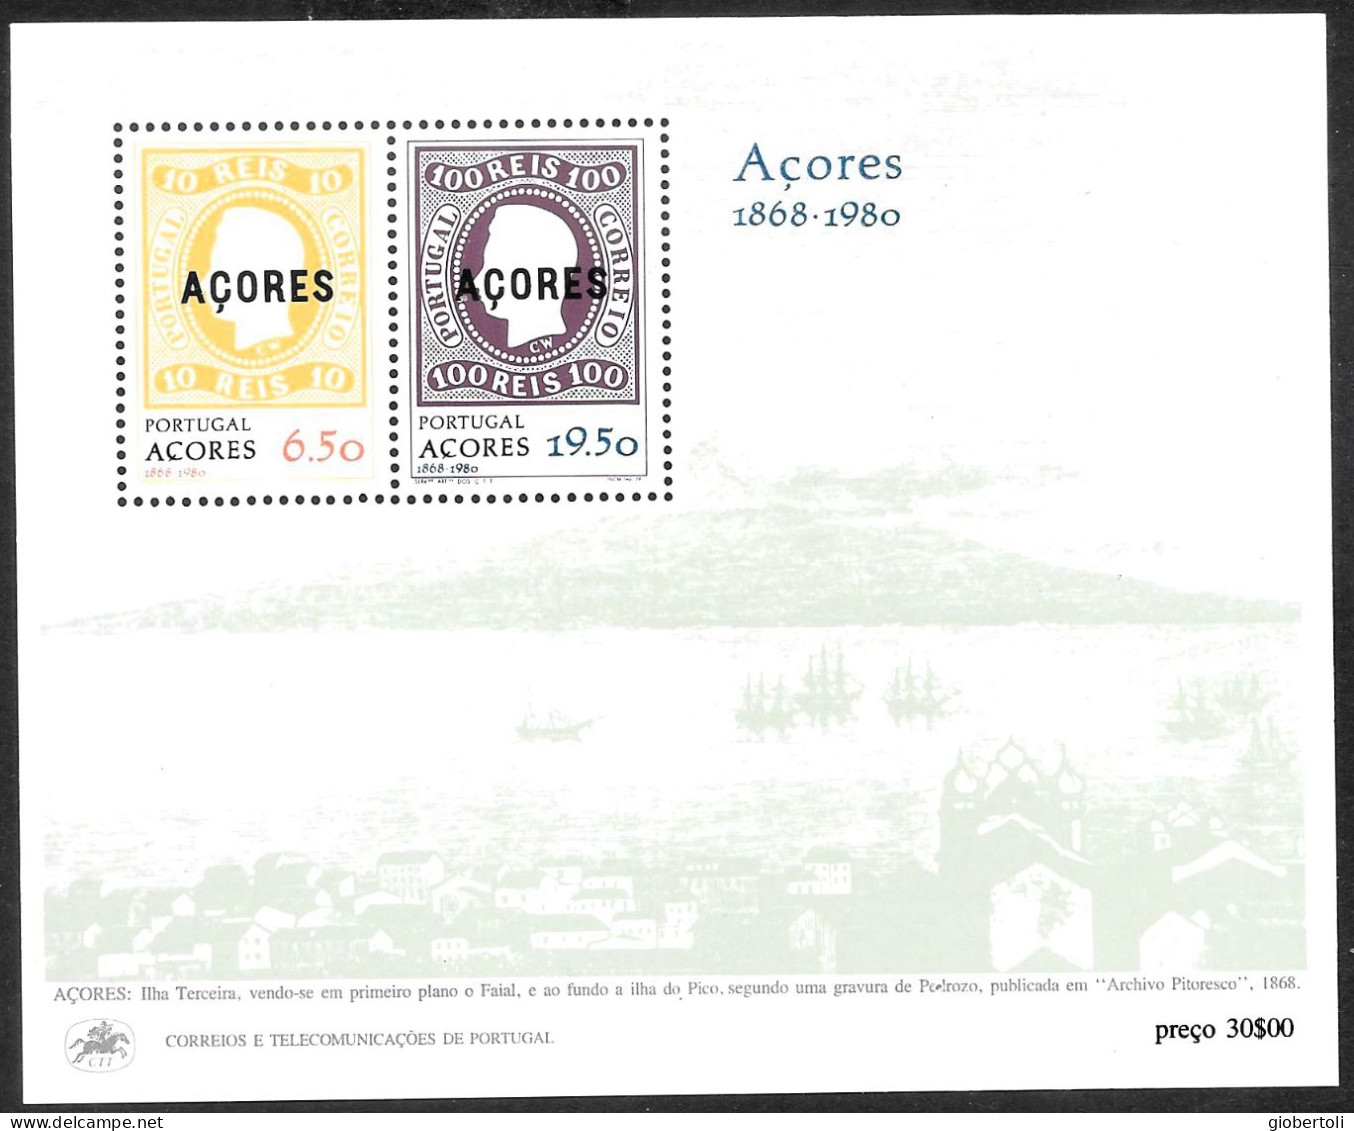 Portogallo/Portugal (Azzorre): Francobolli Su Francobolli, Stamps Upon Stamps, Timbres Sur Timbres - Stamps On Stamps